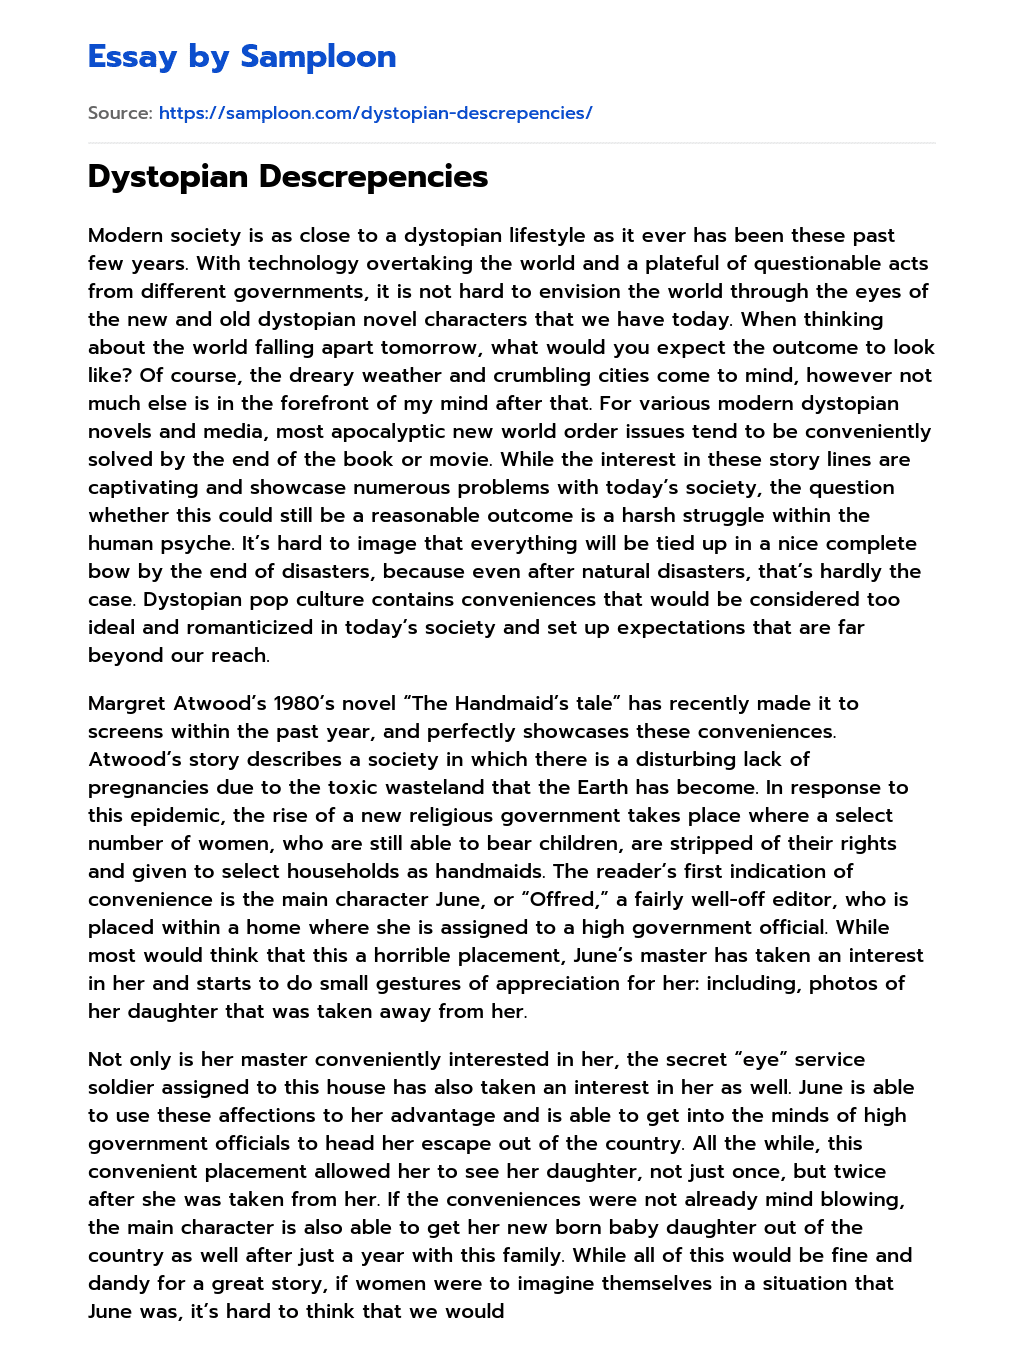 Dystopian Descrepencies essay